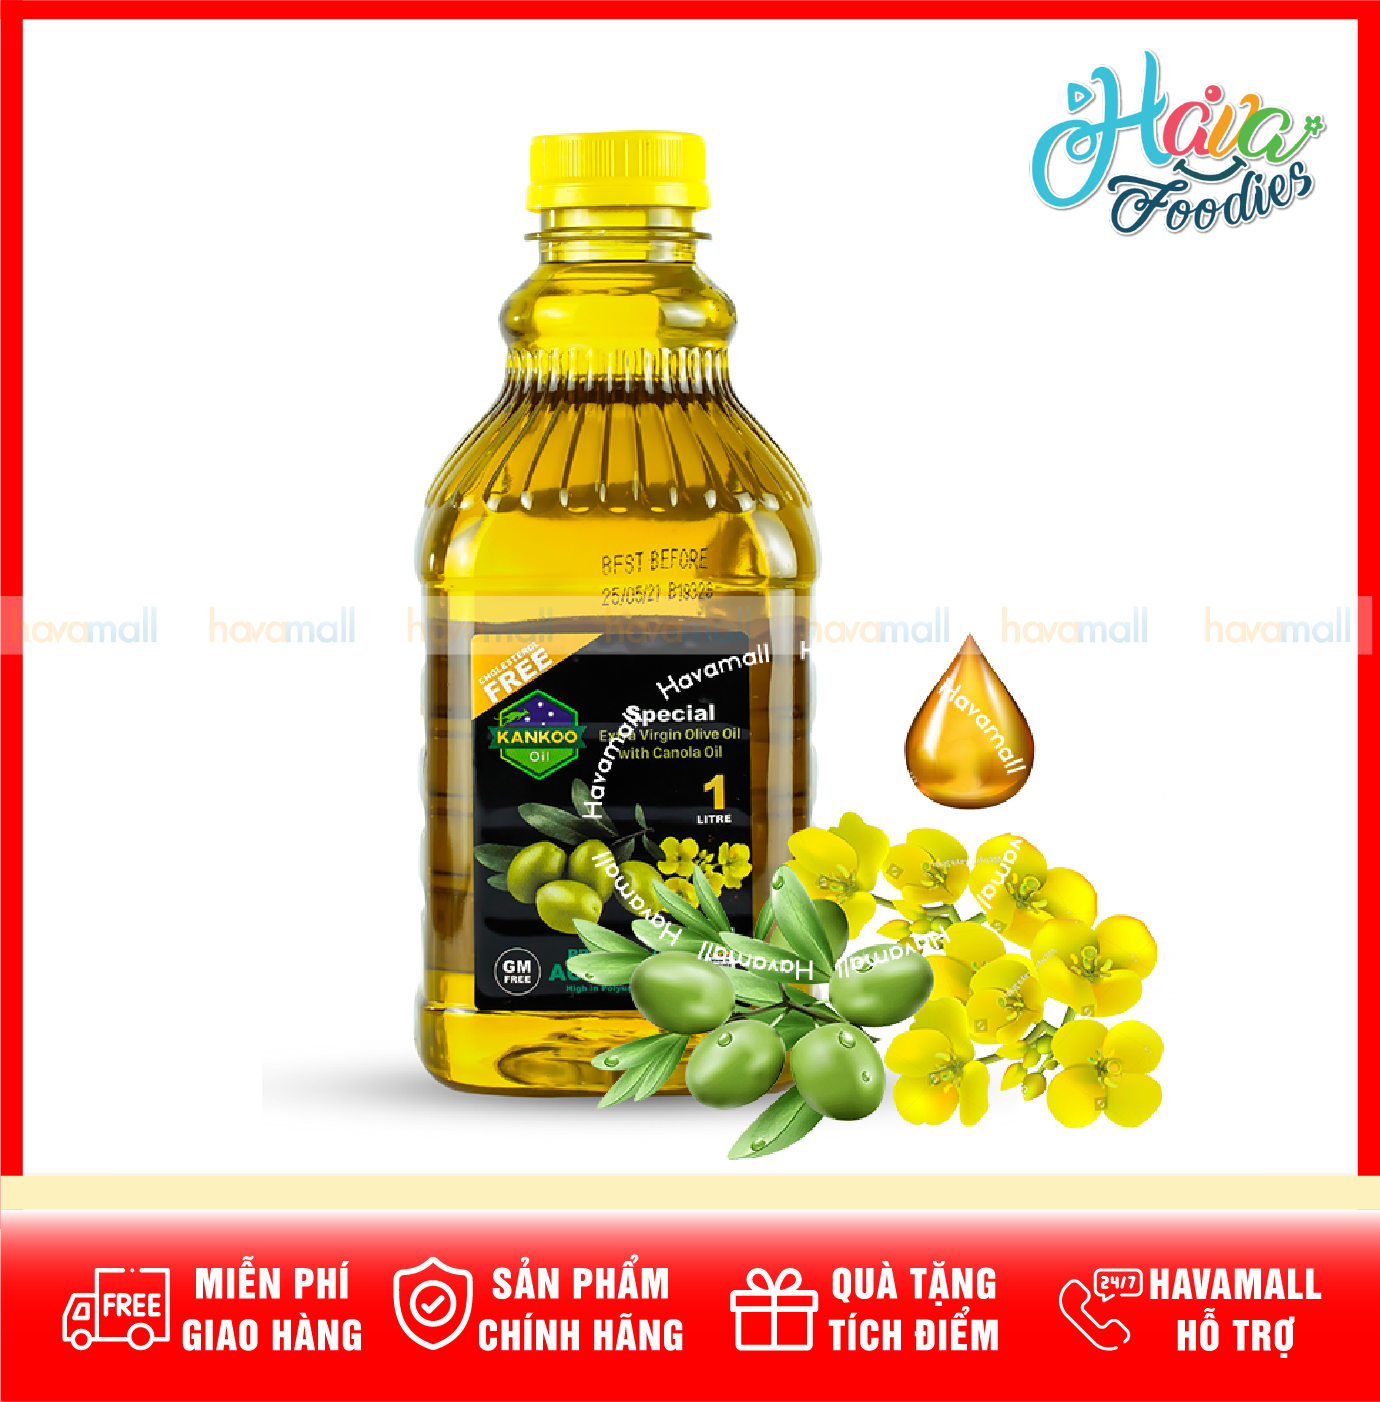 [HOÀN TIỀN MAX 10%] Dầu Oliu Hạt Cải Kankoo Nhập Khẩu Úc – Canola Oil & Extra Virgin Olive Oil 1L